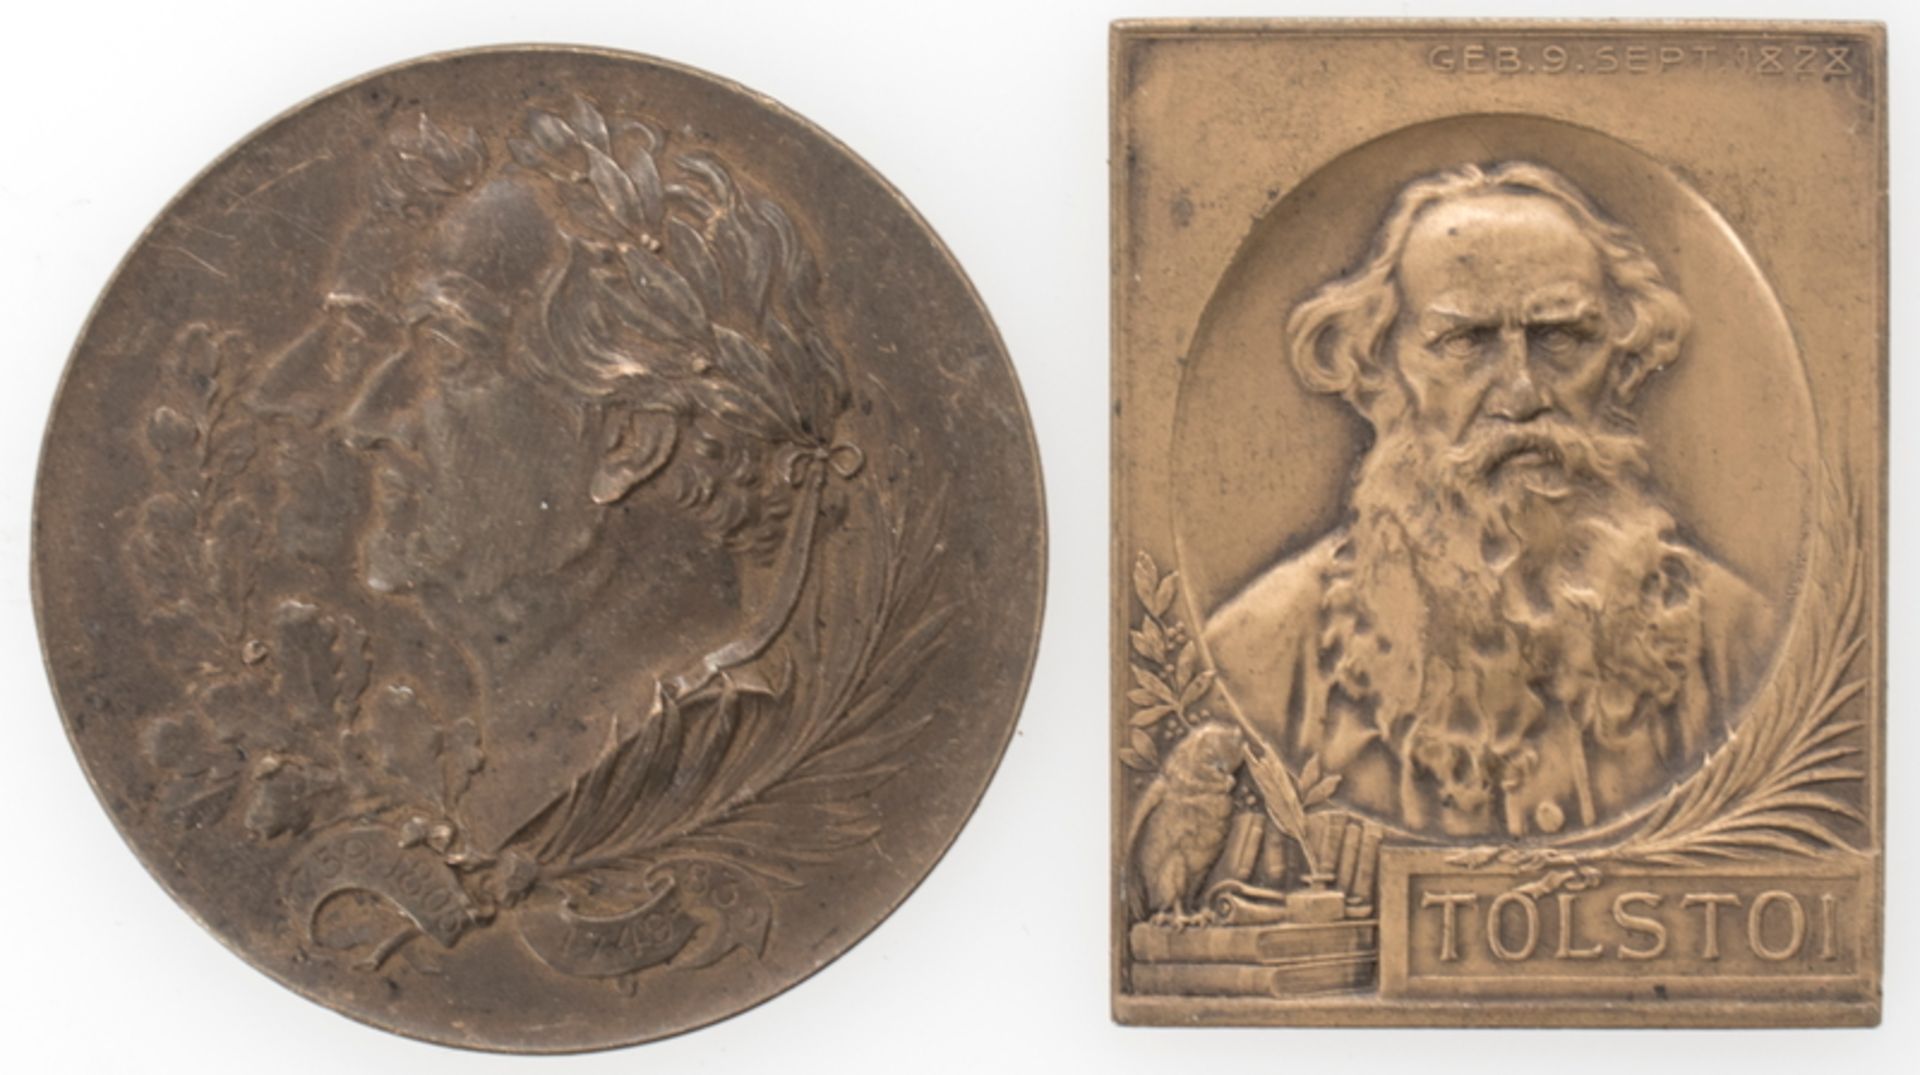 Zwei Medaillen / Plakette, Schiller und Tolstoi. Durchmesser: ca. 50 mm und ca. 50 mm x ca. 39 mm.